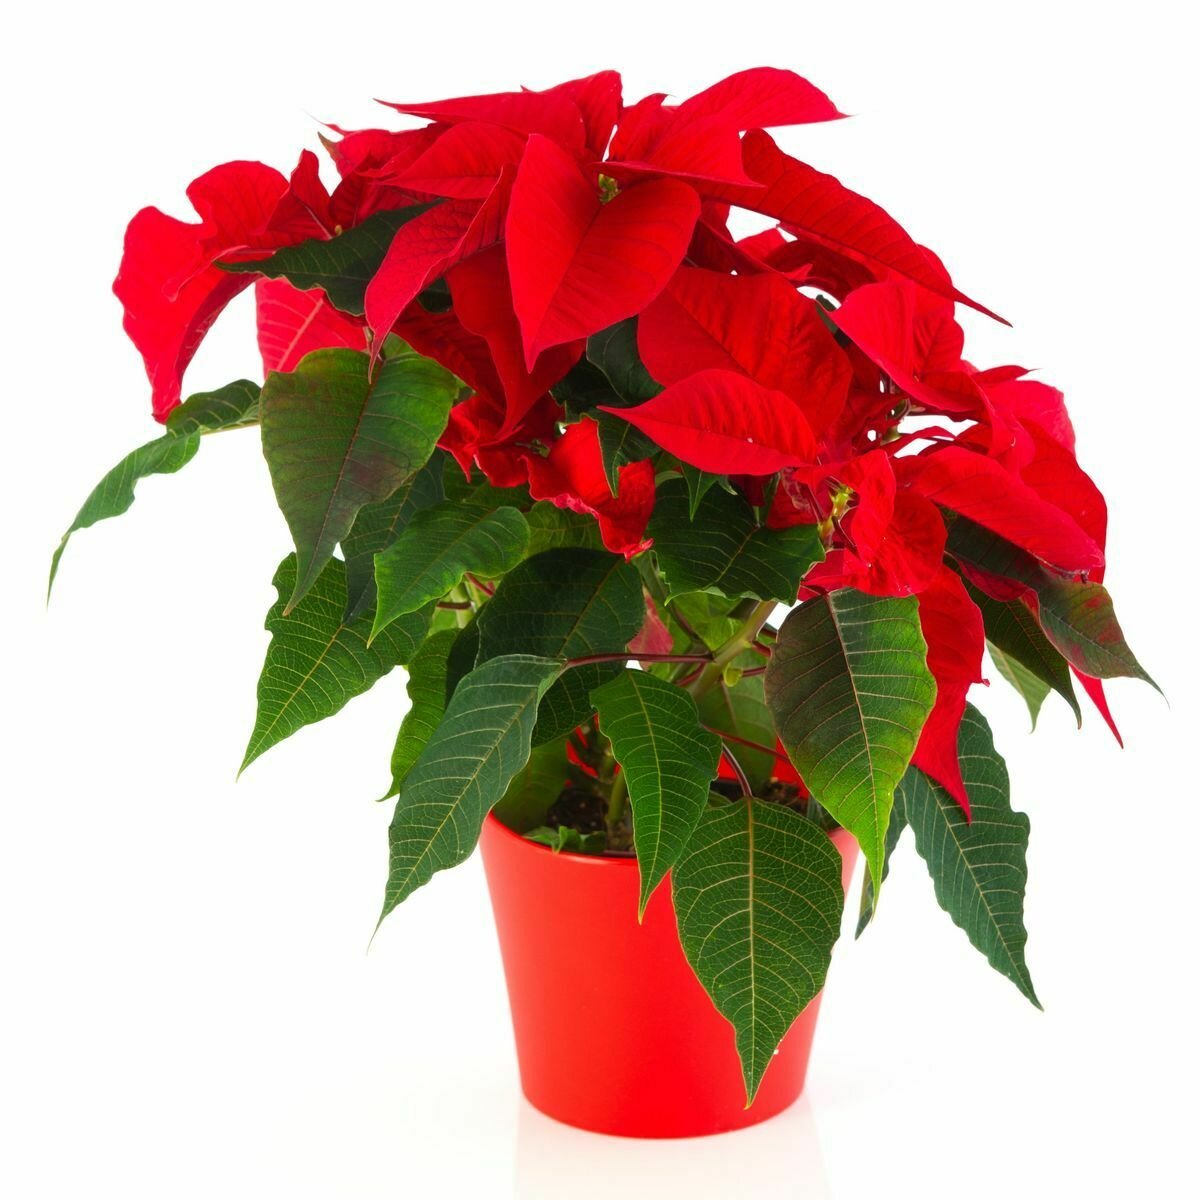      Во многих домах рождественская звезда, известное и популярное декоративное растение, в настоящее время процветает на столе, а ее в основном красные листья делают квартиру еще более красивой зимой.-2